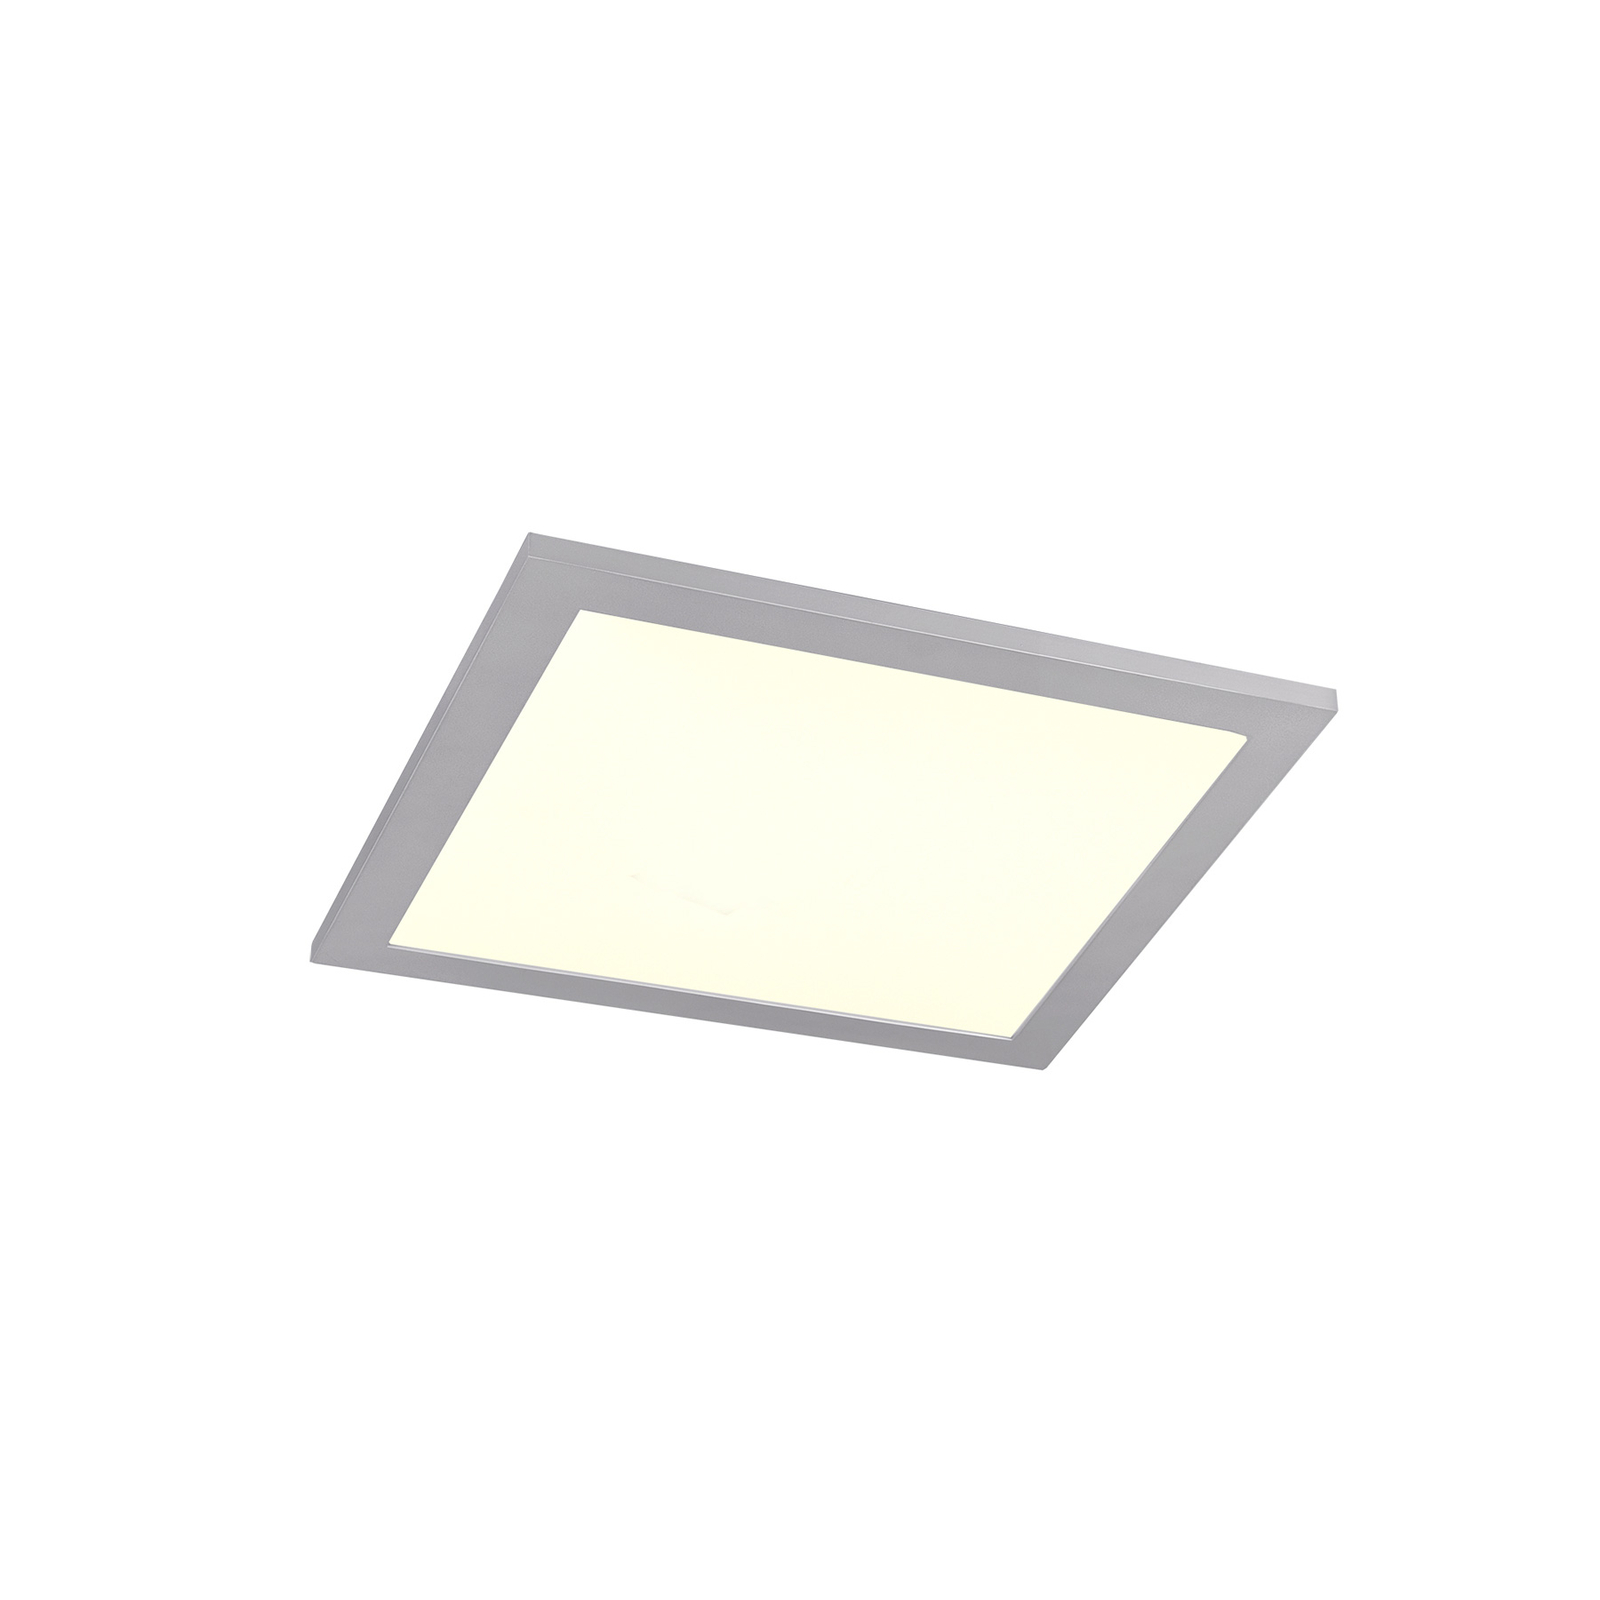 Lampa sufitowa LED Alima, CCT, WiZ, 29,5 x 29,5 cm